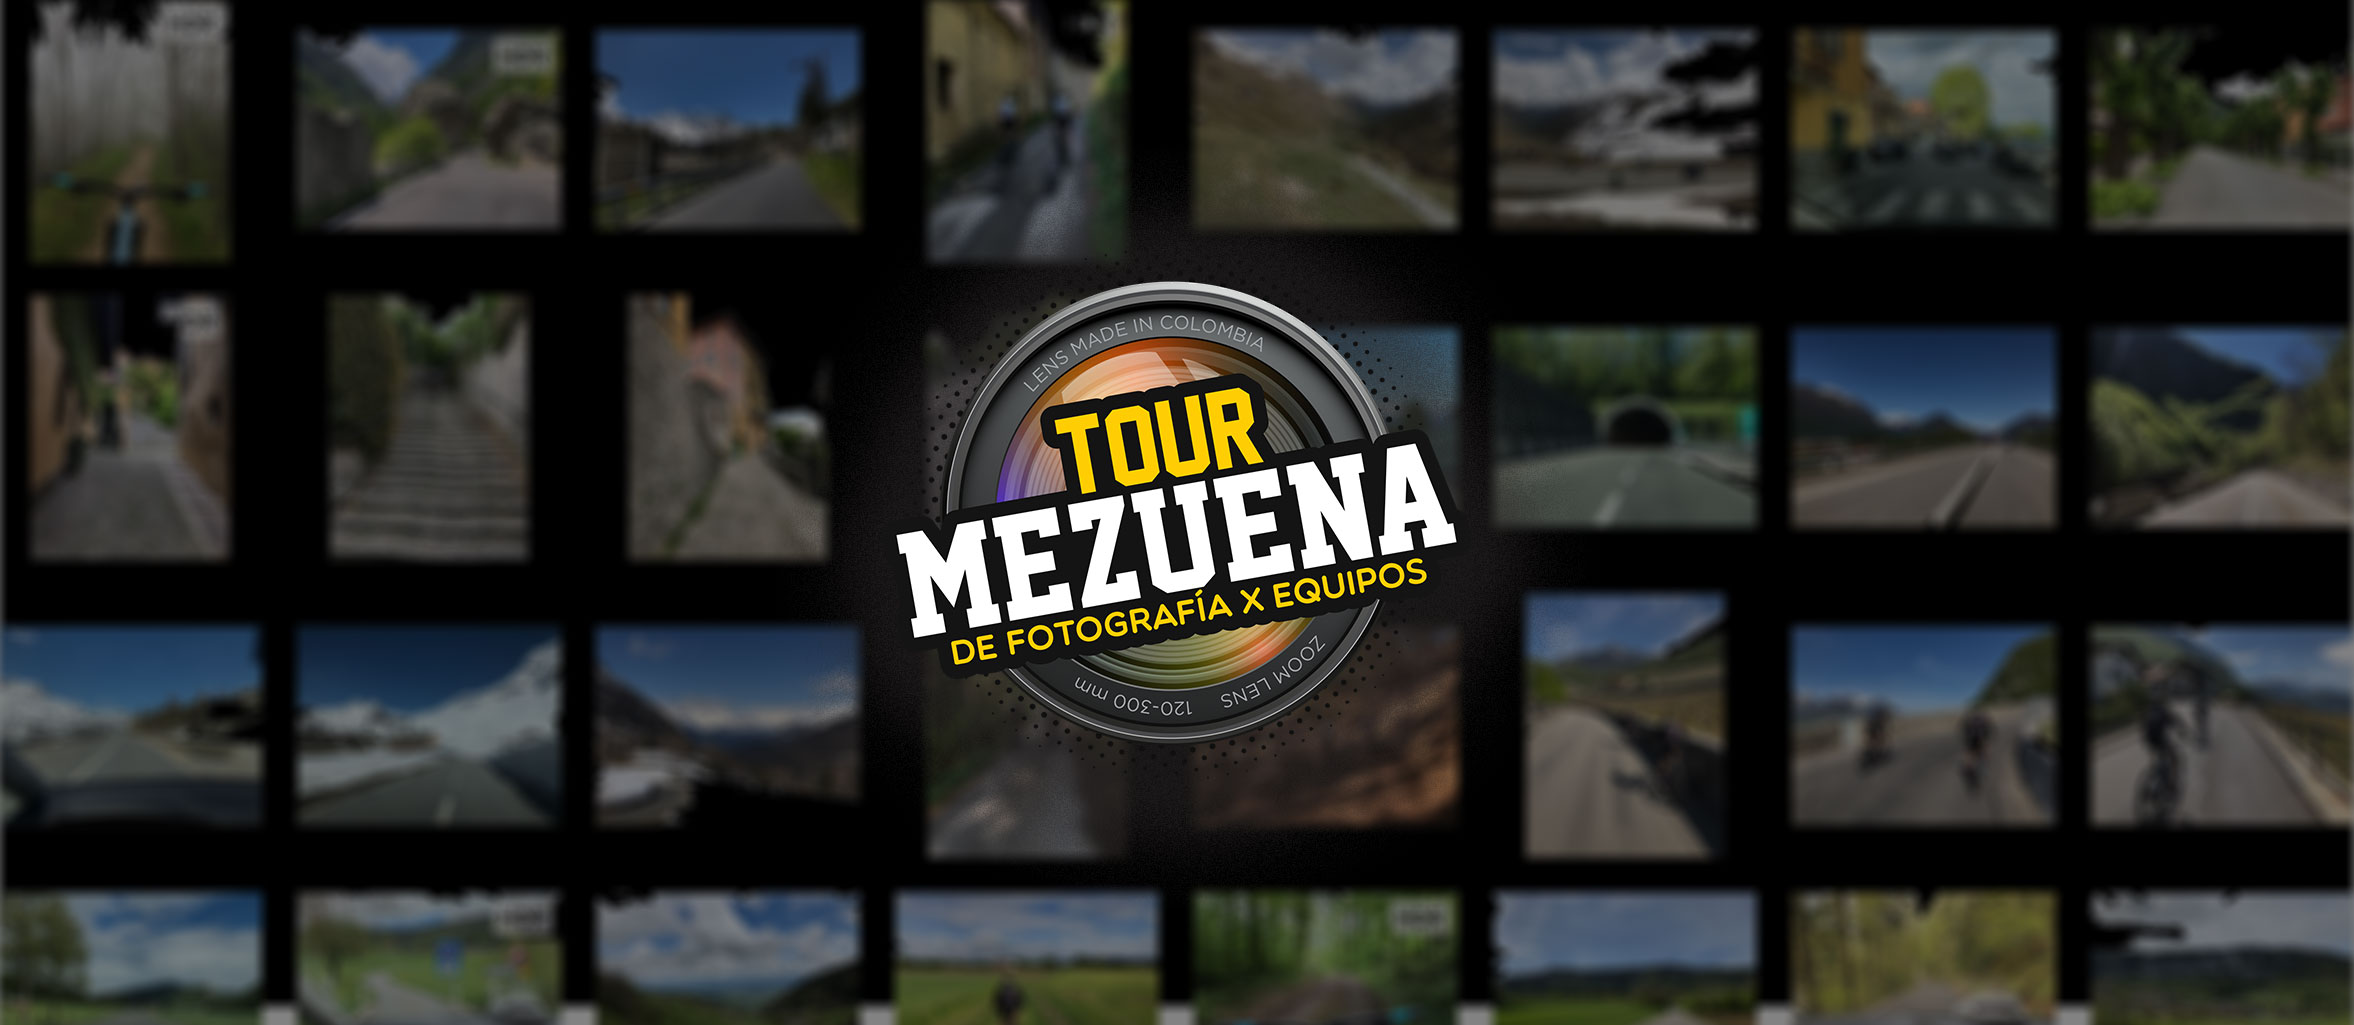 Finalizó el espectacular Tour Mezuena de fotografía por equipos